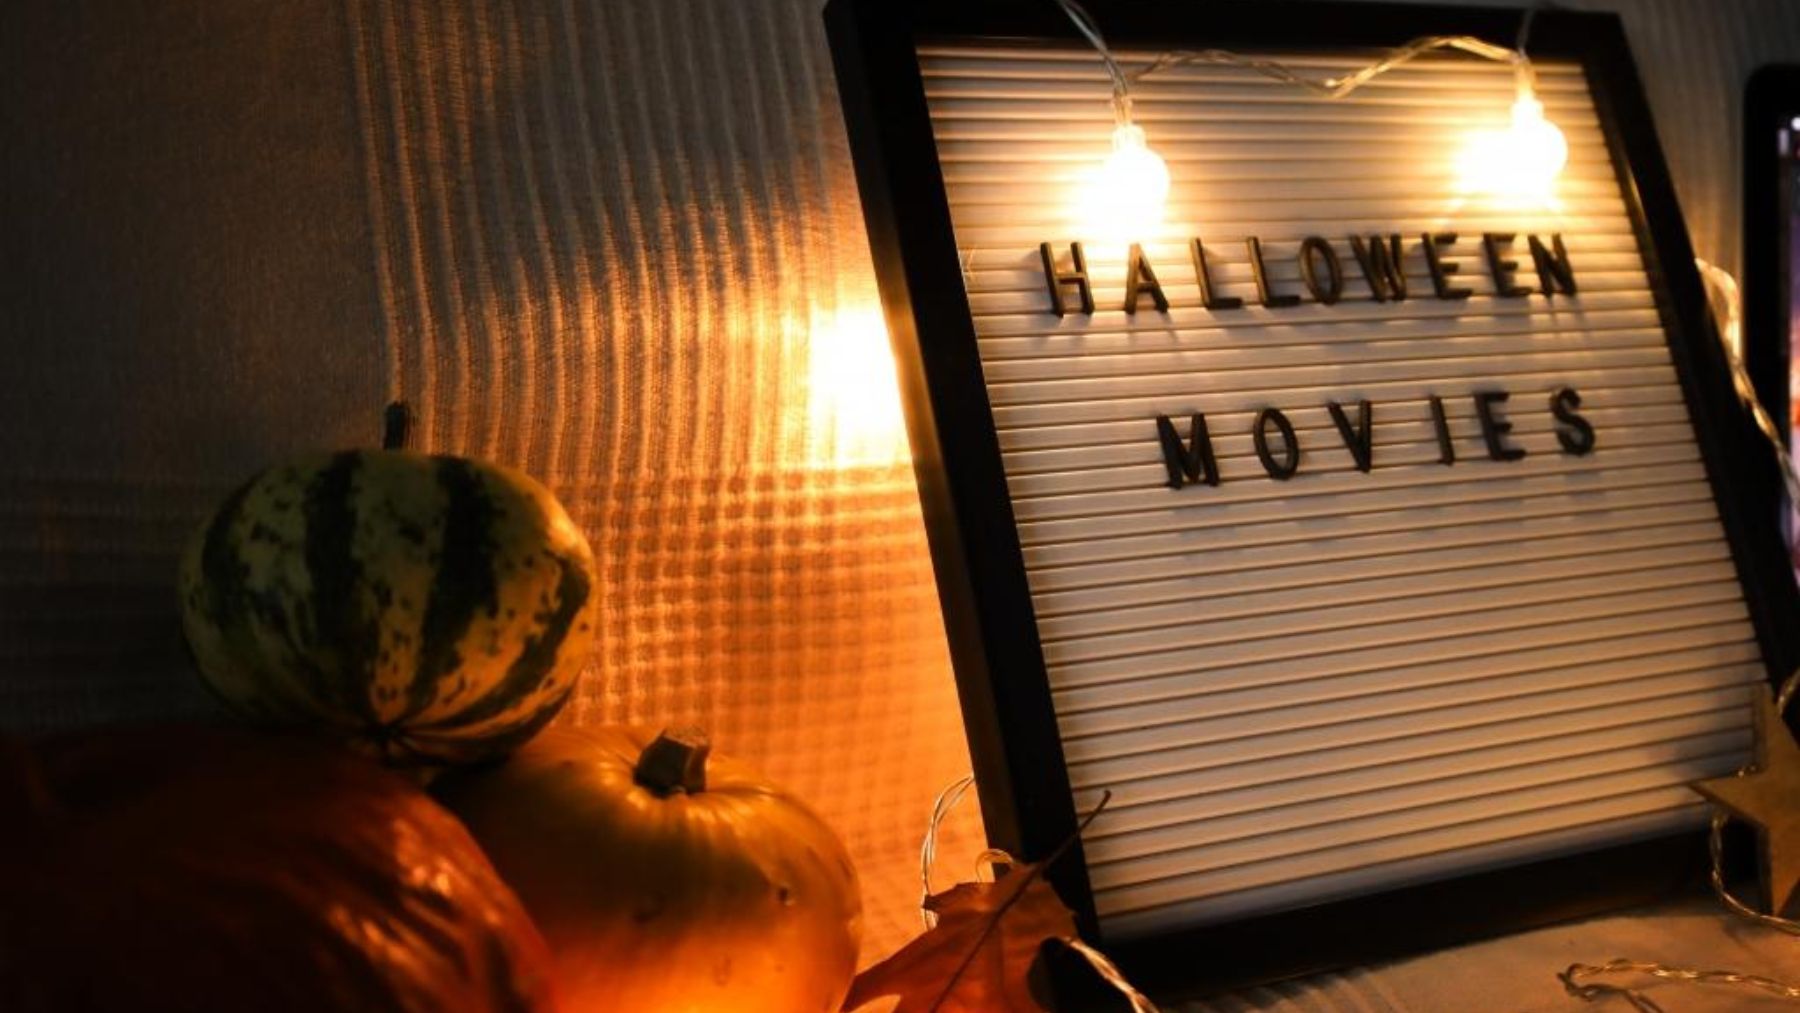 Los mejores títulos de películas de Halloween que podemos ver en familia